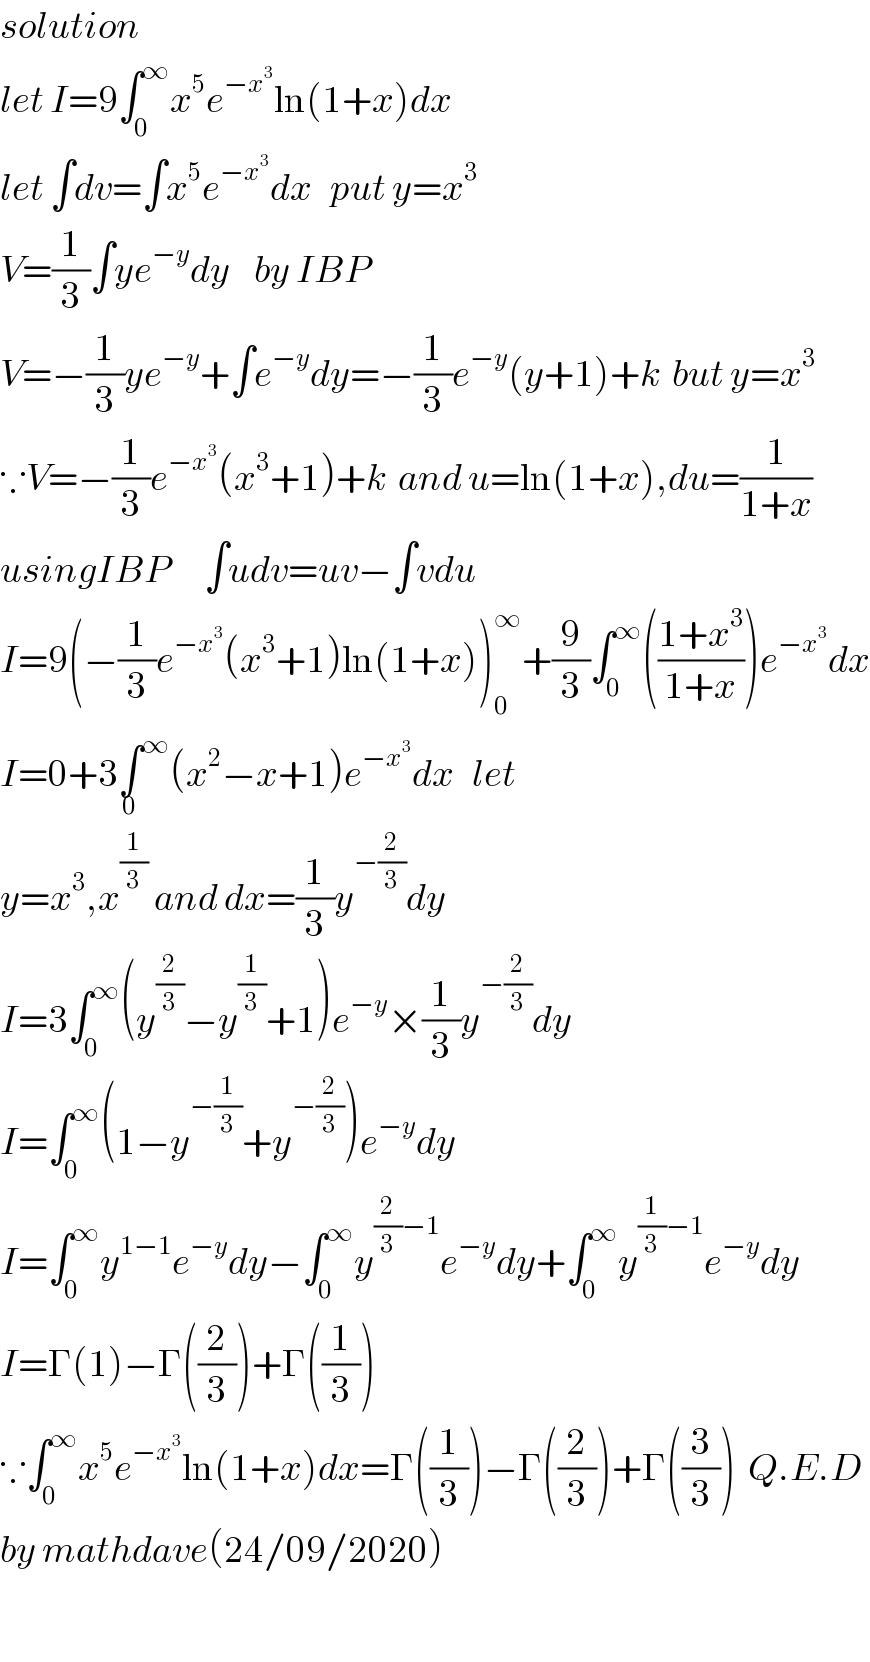 solution   let I=9∫_0 ^∞ x^5 e^(−x^3 ) ln(1+x)dx  let ∫dv=∫x^5 e^(−x^3 ) dx   put y=x^3   V=(1/3)∫ye^(−y) dy    by IBP  V=−(1/3)ye^(−y) +∫e^(−y) dy=−(1/3)e^(−y) (y+1)+k  but y=x^3   ∵V=−(1/3)e^(−x^3 ) (x^3 +1)+k  and u=ln(1+x),du=(1/(1+x))  usingIBP      ∫udv=uv−∫vdu  I=9(−(1/3)e^(−x^3 ) (x^3 +1)ln(1+x))_0 ^∞ +(9/3)∫_0 ^∞ (((1+x^3 )/(1+x)))e^(−x^3 ) dx  I=0+3∫^∞ _0 (x^2 −x+1)e^(−x^3 ) dx   let  y=x^3 ,x^(1/3)  and dx=(1/3)y^(−(2/3)) dy  I=3∫_0 ^∞ (y^(2/3) −y^(1/3) +1)e^(−y) ×(1/3)y^(−(2/3)) dy  I=∫_0 ^∞ (1−y^(−(1/3)) +y^(−(2/3)) )e^(−y) dy  I=∫_0 ^∞ y^(1−1) e^(−y) dy−∫_0 ^∞ y^((2/3)−1) e^(−y) dy+∫_0 ^∞ y^((1/3)−1) e^(−y) dy  I=Γ(1)−Γ((2/3))+Γ((1/3))  ∵∫_0 ^∞ x^5 e^(−x^3 ) ln(1+x)dx=Γ((1/3))−Γ((2/3))+Γ((3/3))  Q.E.D  by mathdave(24/09/2020)     